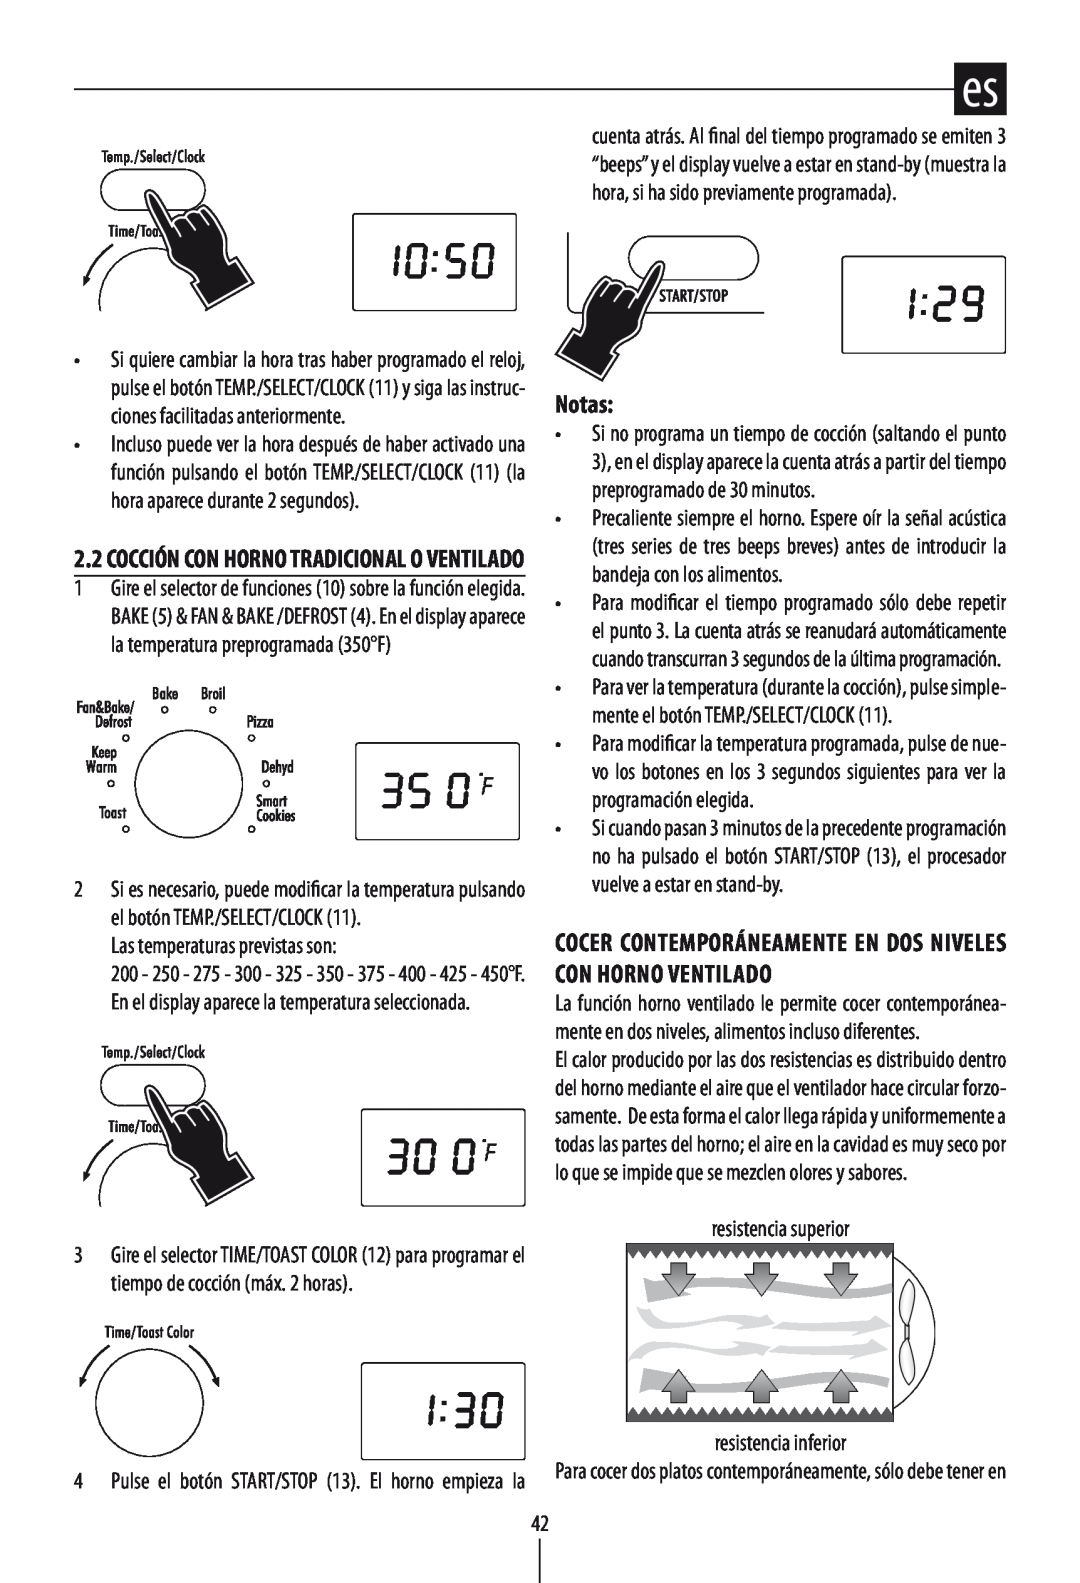 DeLonghi DO1289 manual Notas, Las temperaturas previstas son, resistencia superior resistencia inferior 